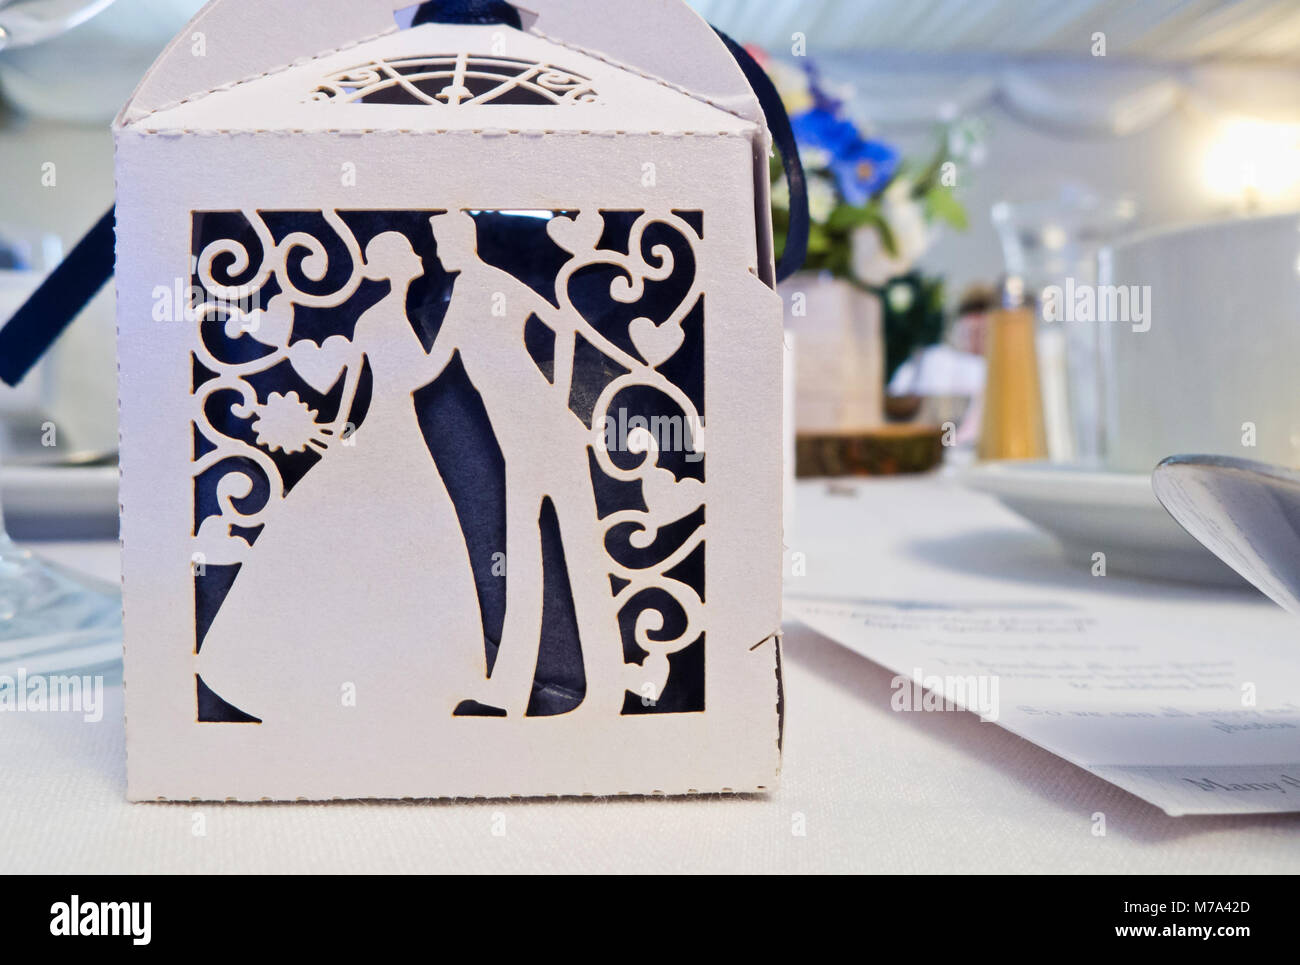 Une boîte cadeau carte blanche sur une table à un dîner de mariage. Banque D'Images